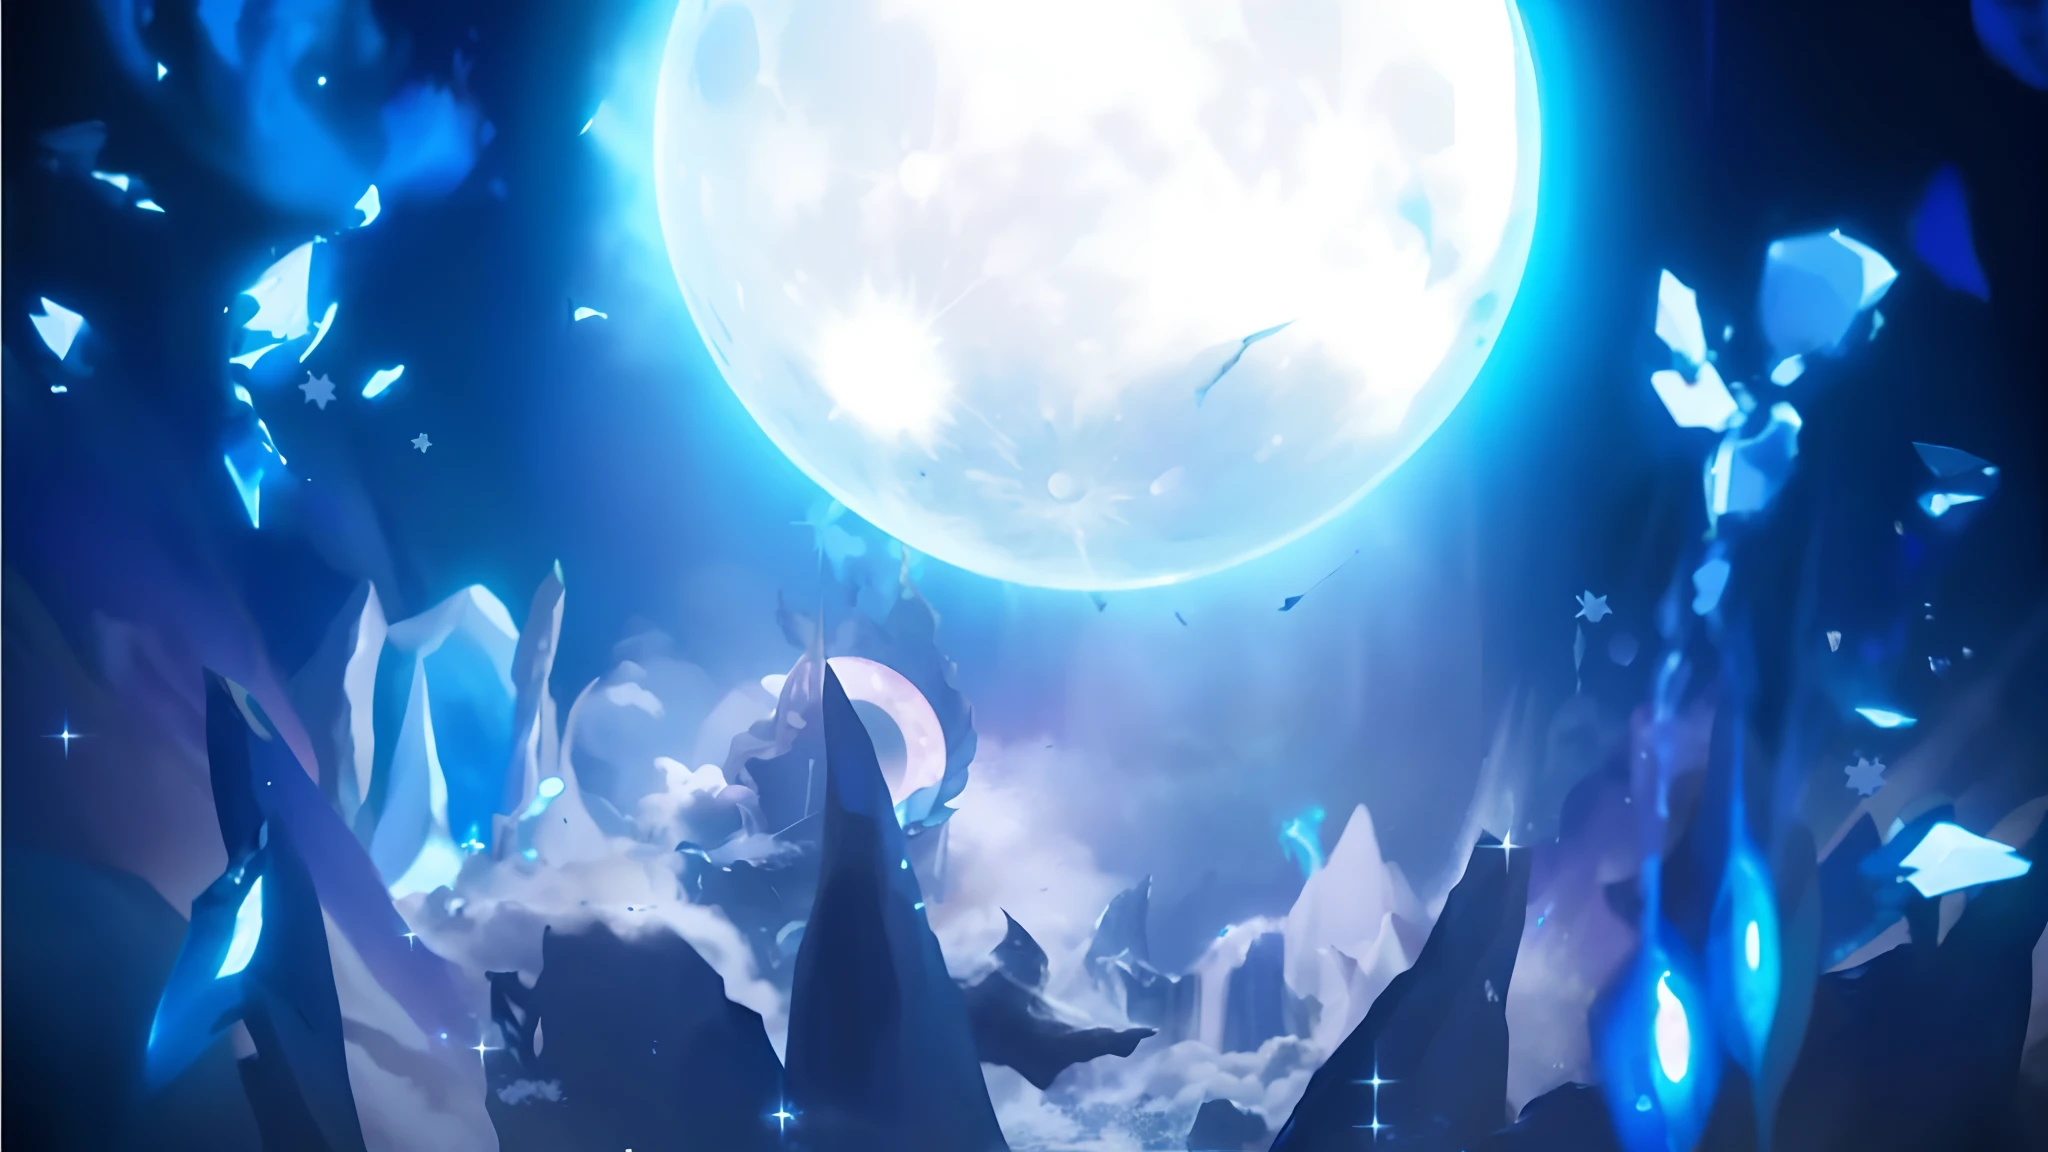 満月とその前に人が立っているアニメのシーン, リーグ・オブ・レジェンド アーケイン, 月明かりの星空の環境, リーグ・オブ・レジェンドより, ブルームーン light, 月で, ブルームーン, 背景アートワーク, 月が地球に衝突する, スプラッシュアート, 大きく輝く月, 粉々になったスカイシネマティック, 月の神, league of legends スプラッシュアート